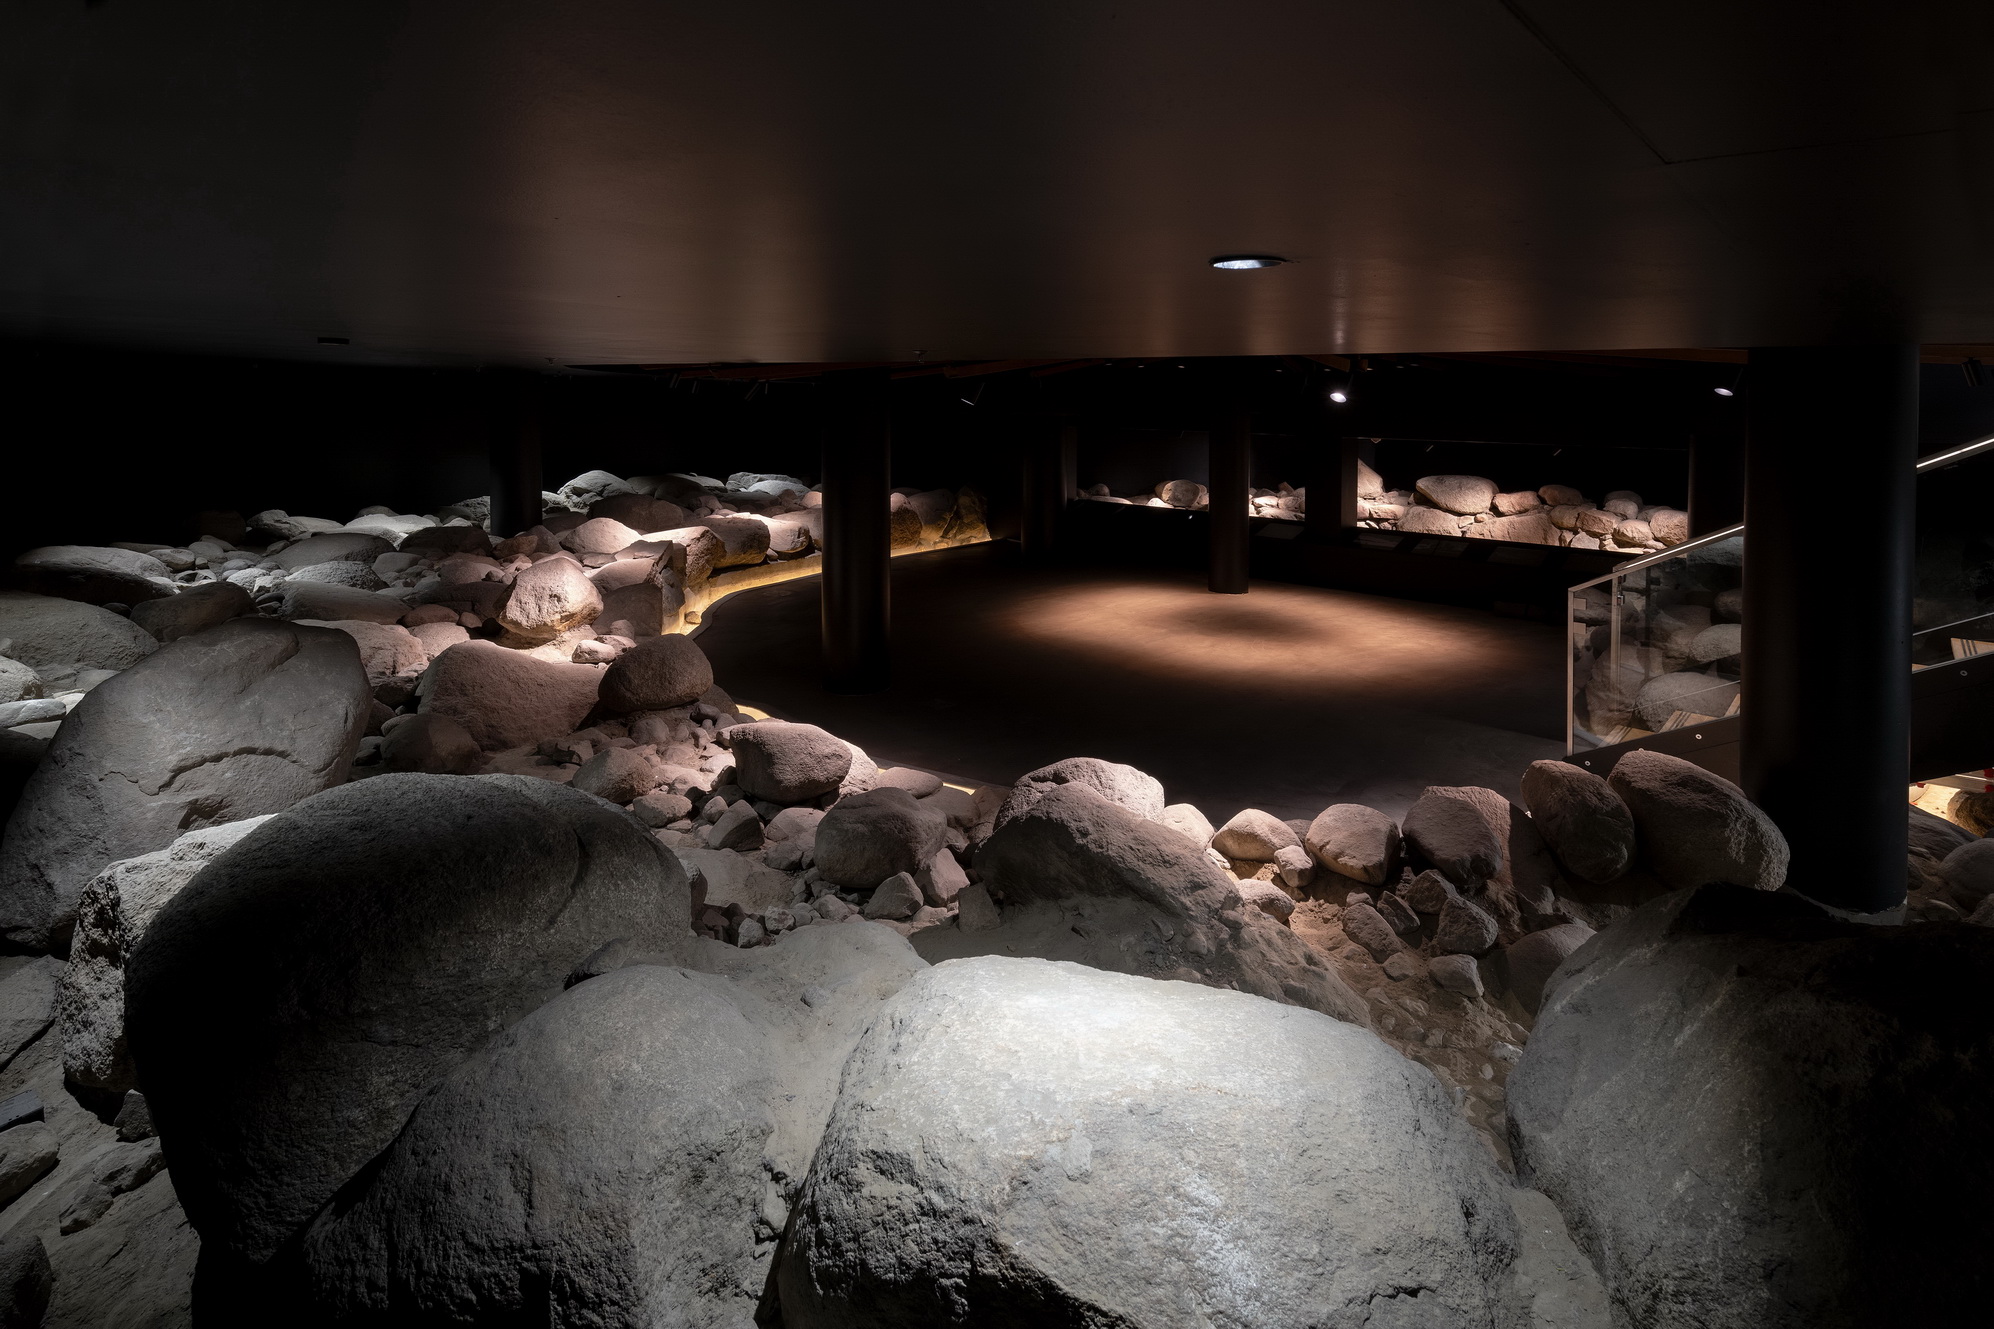 Herzstück des Museums ist der illuminierte Steinkreis des Turmfundamentes mit 19 Metern Durchmesser